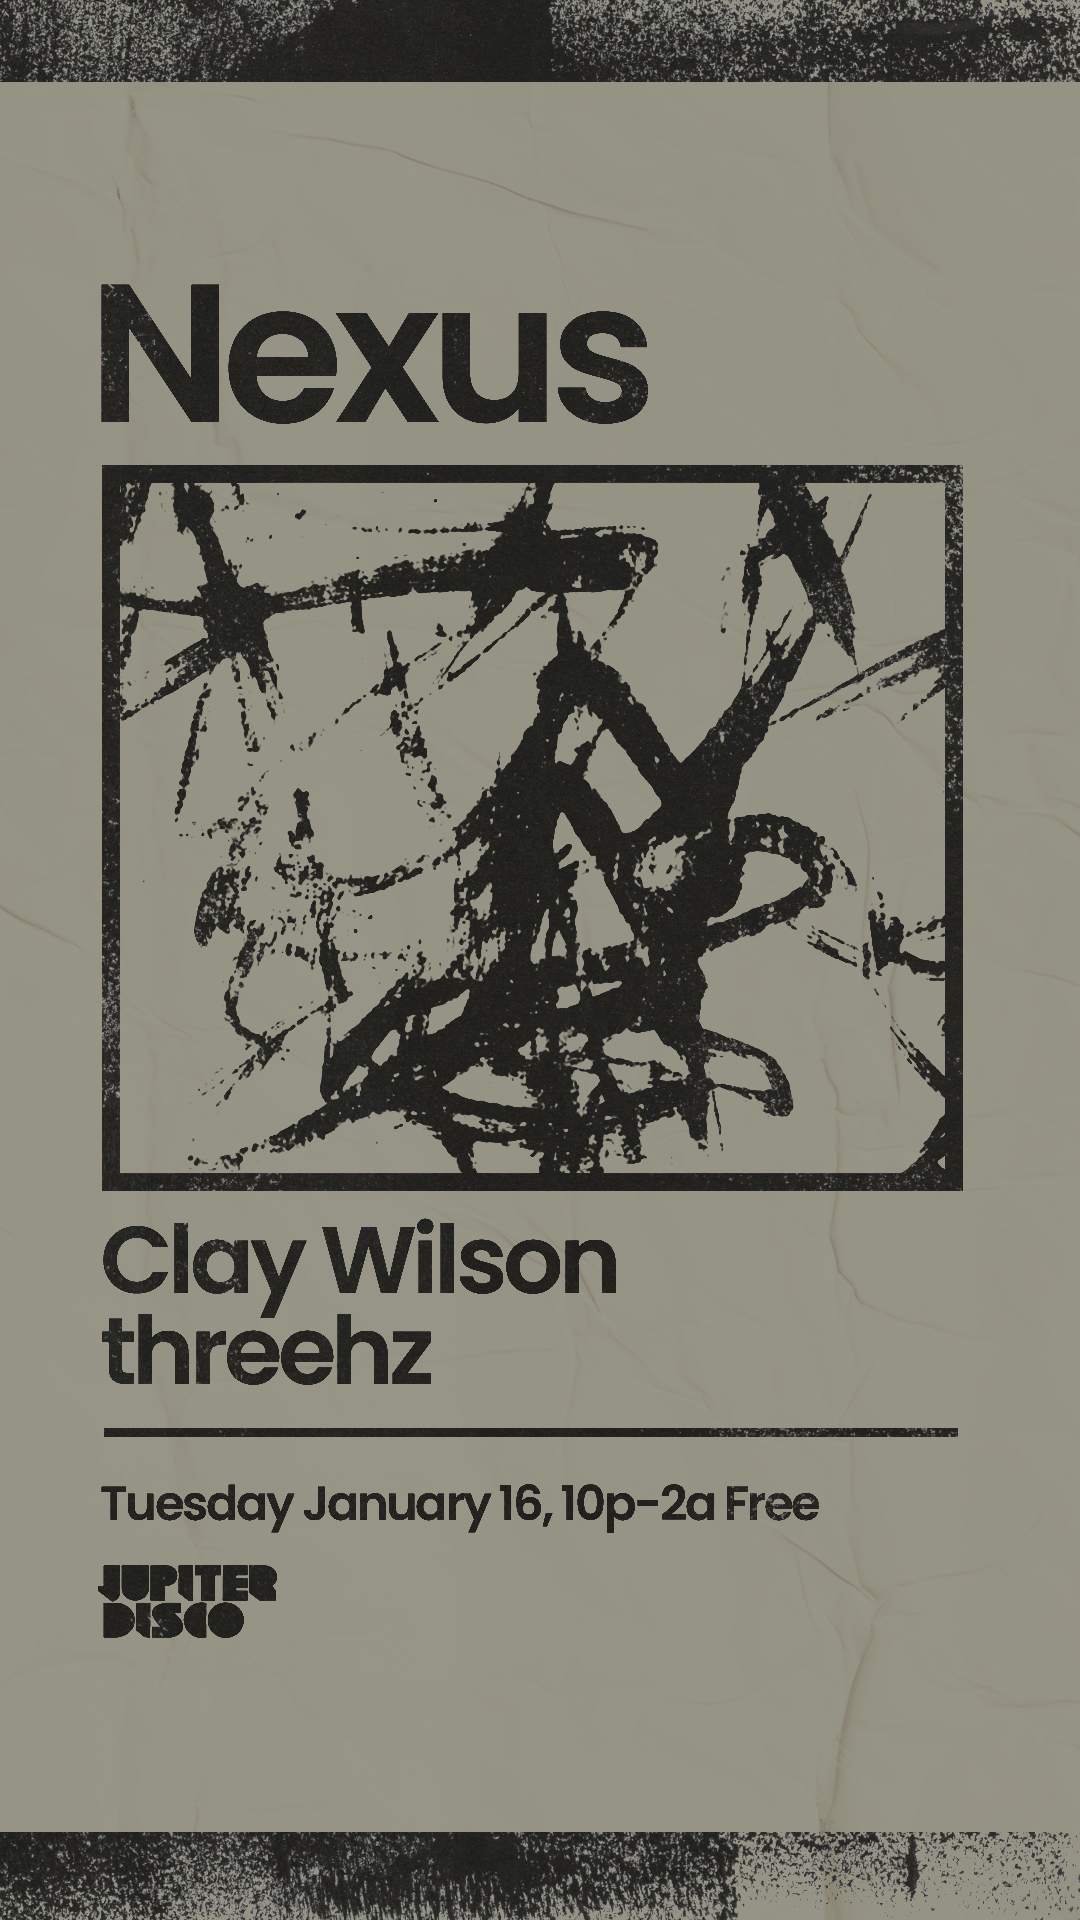 Nexus with Clay Wilson & threehz - フライヤー表